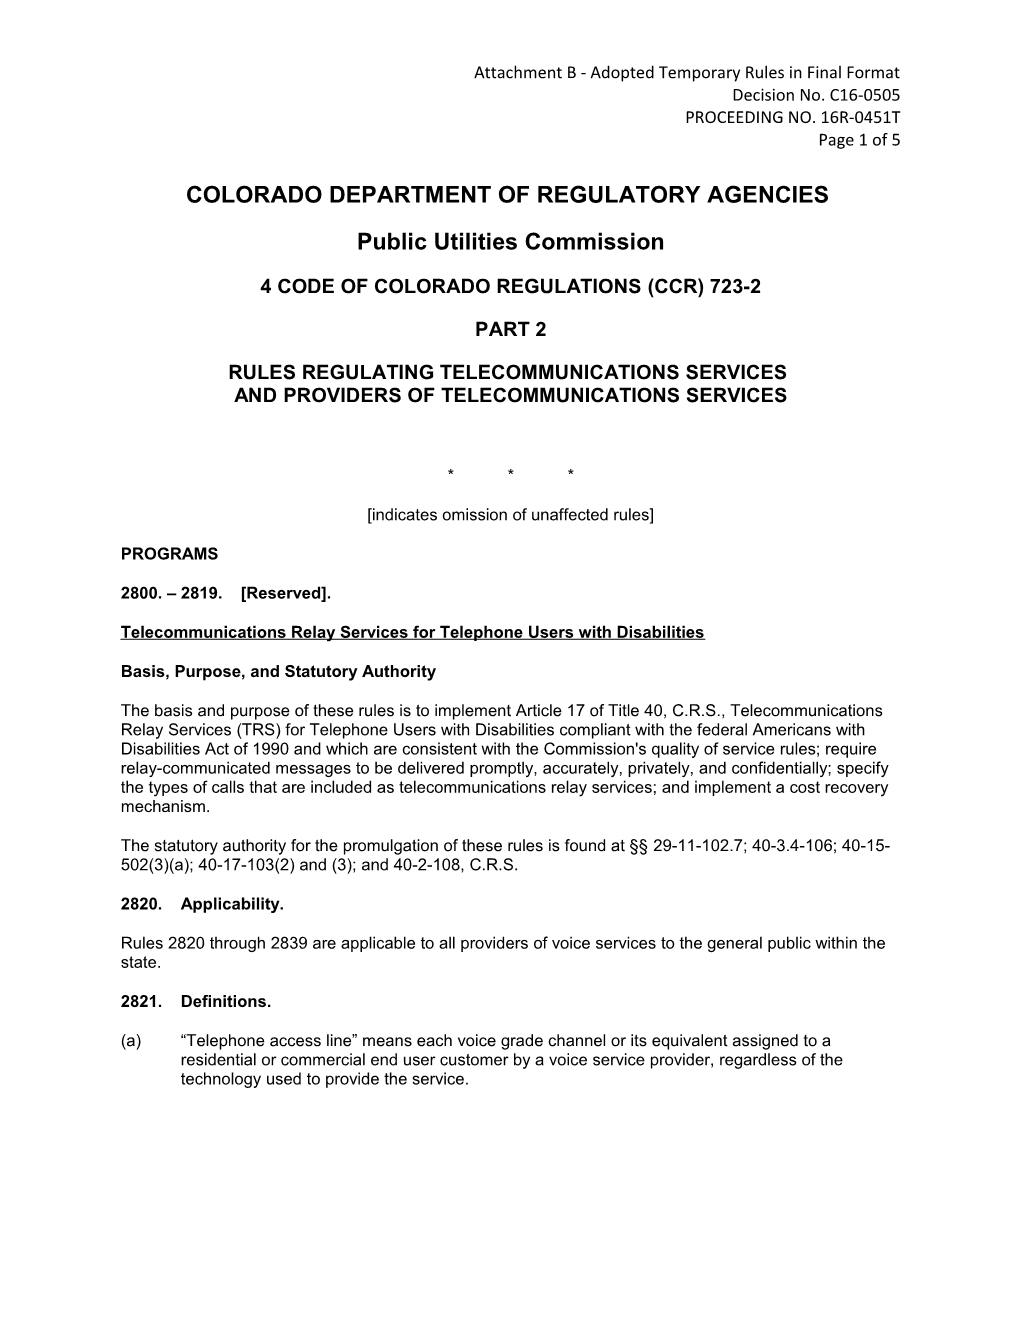 Colorado Department of Regulatory Agencies s12